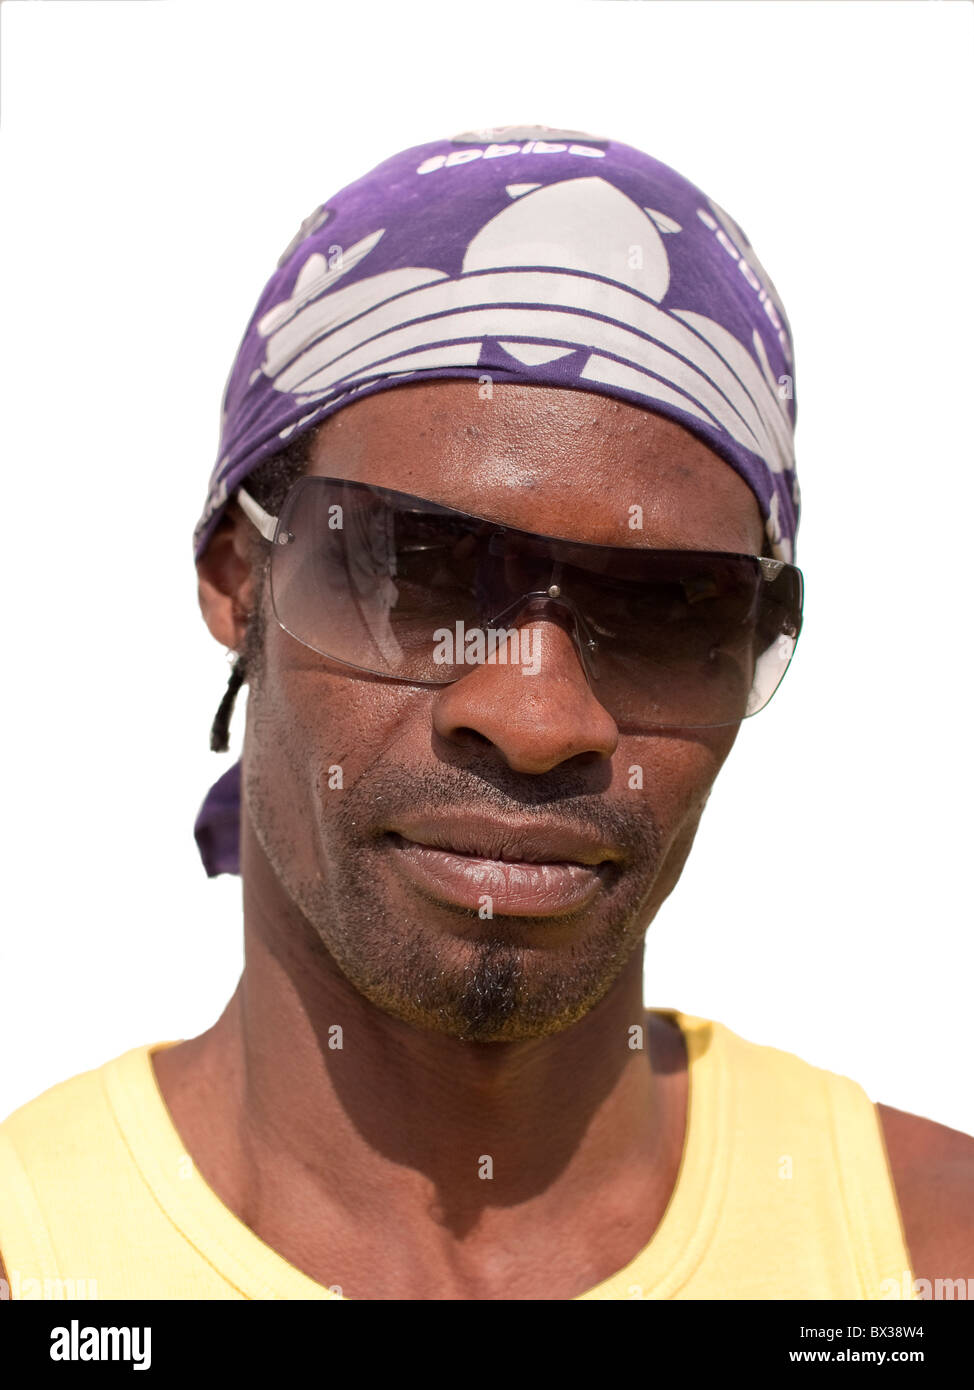 Booma Alter 40 aus Leeds, schwarze männliche Afro-Karibischen gelb-T-Shirt und lila Kopftuch tragen. Stockfoto